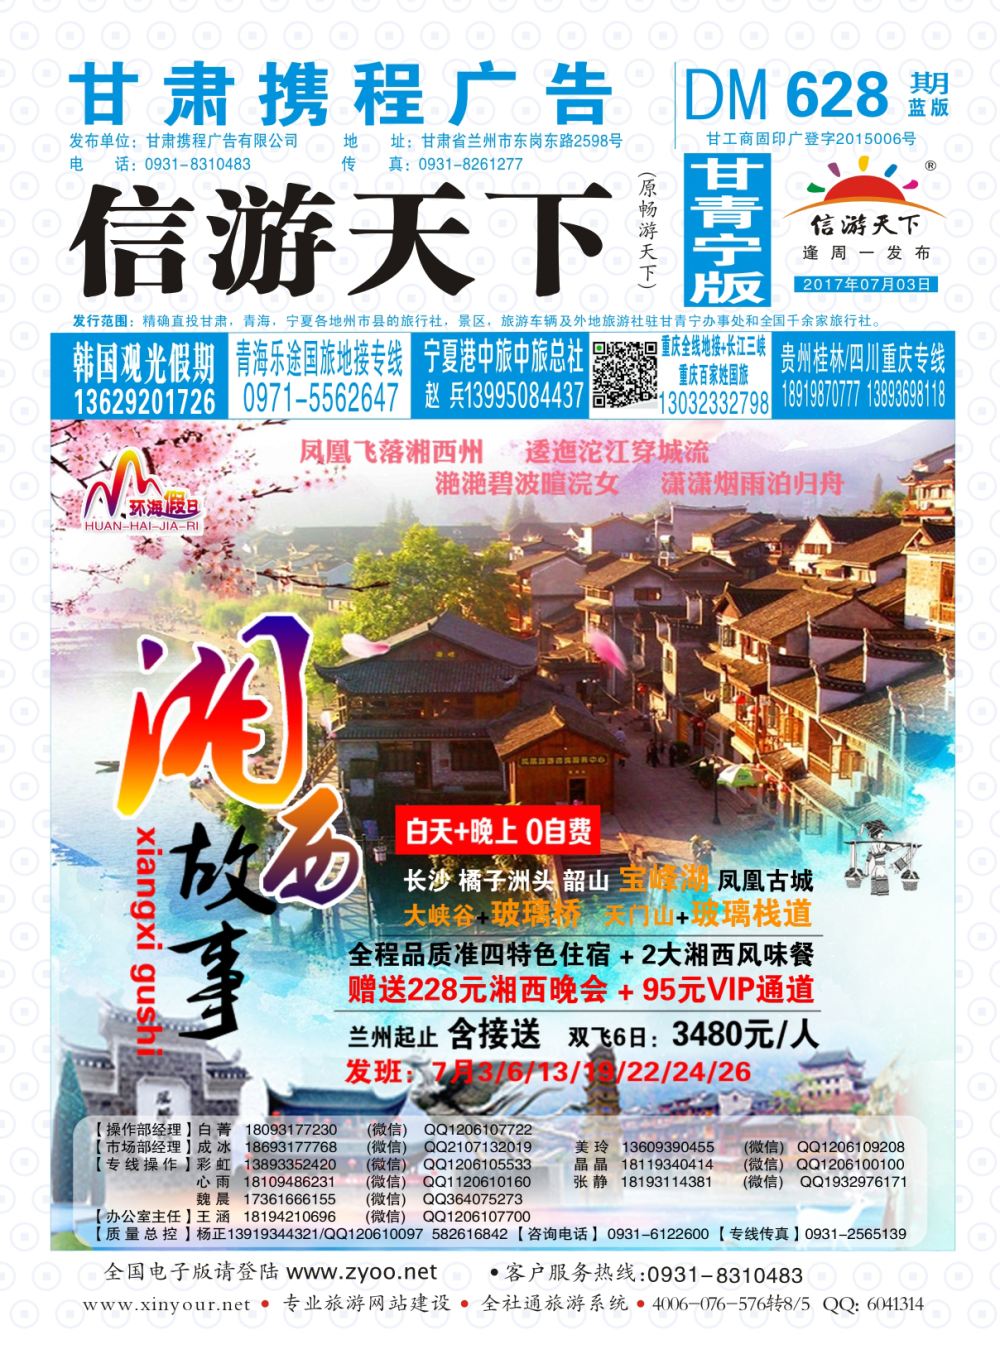 628期       甘肃龙源国际旅行社-环海假日  封面